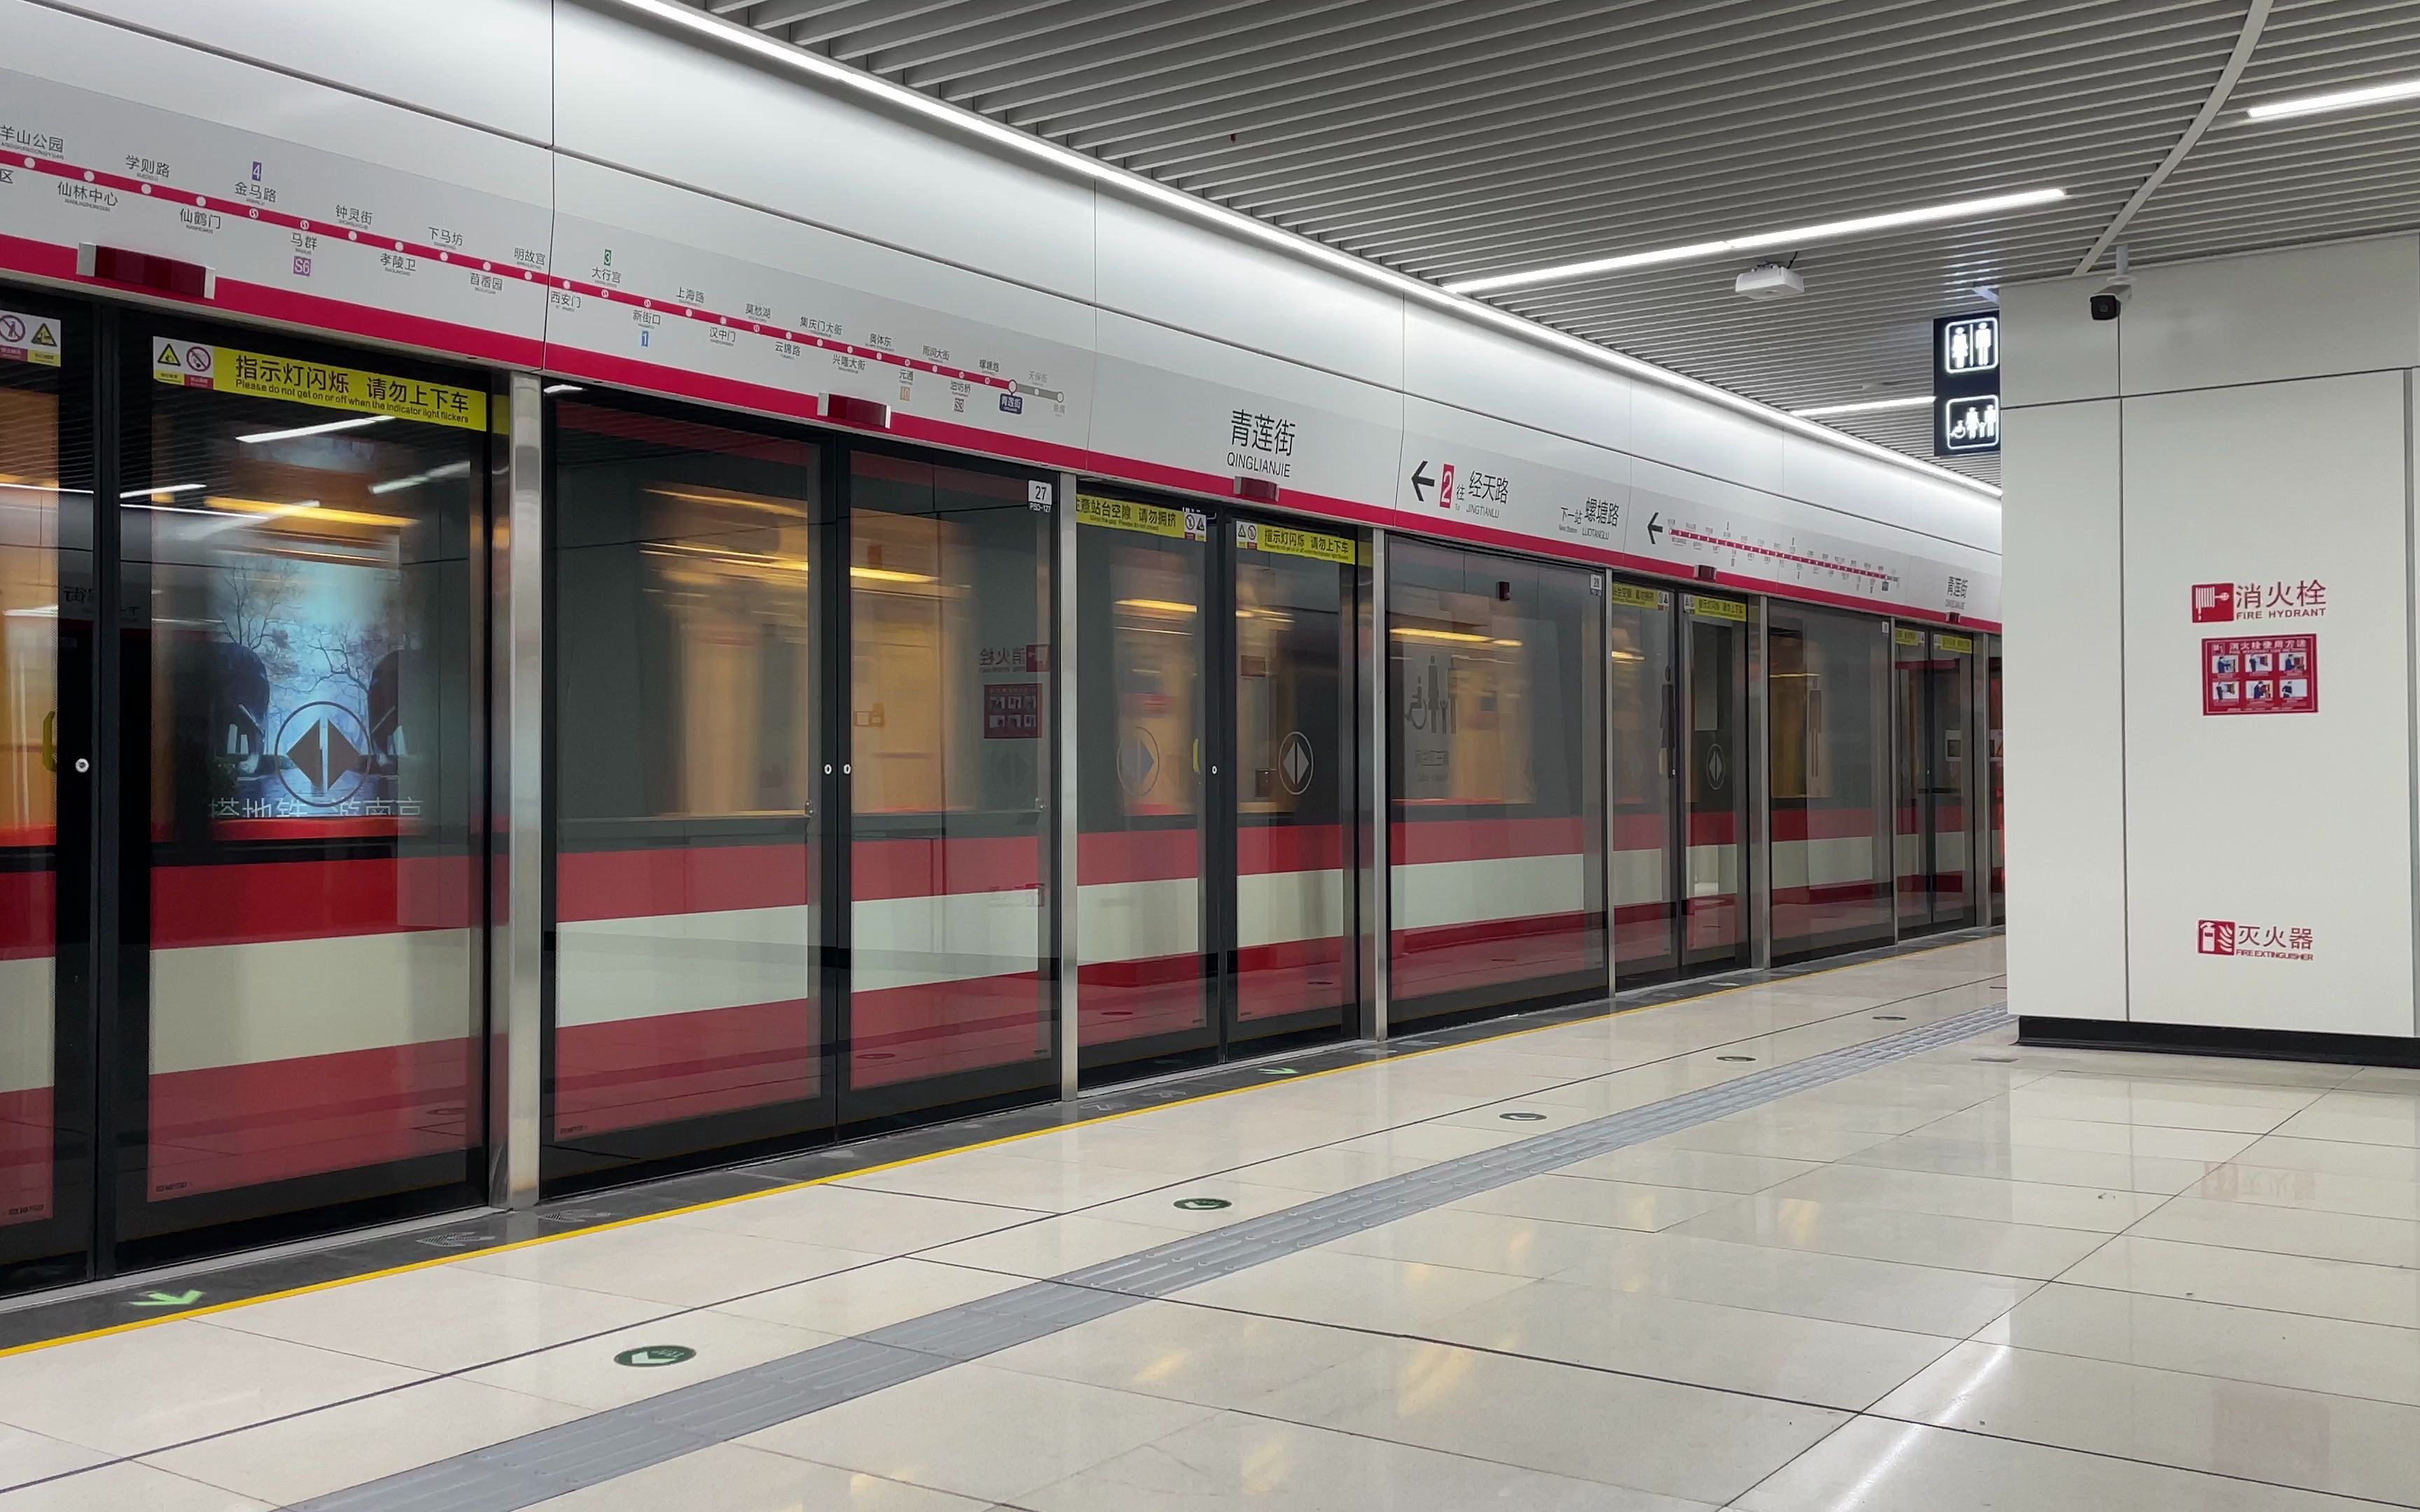 【南京地铁】2号线西延线老车快速进站 清晰走行音